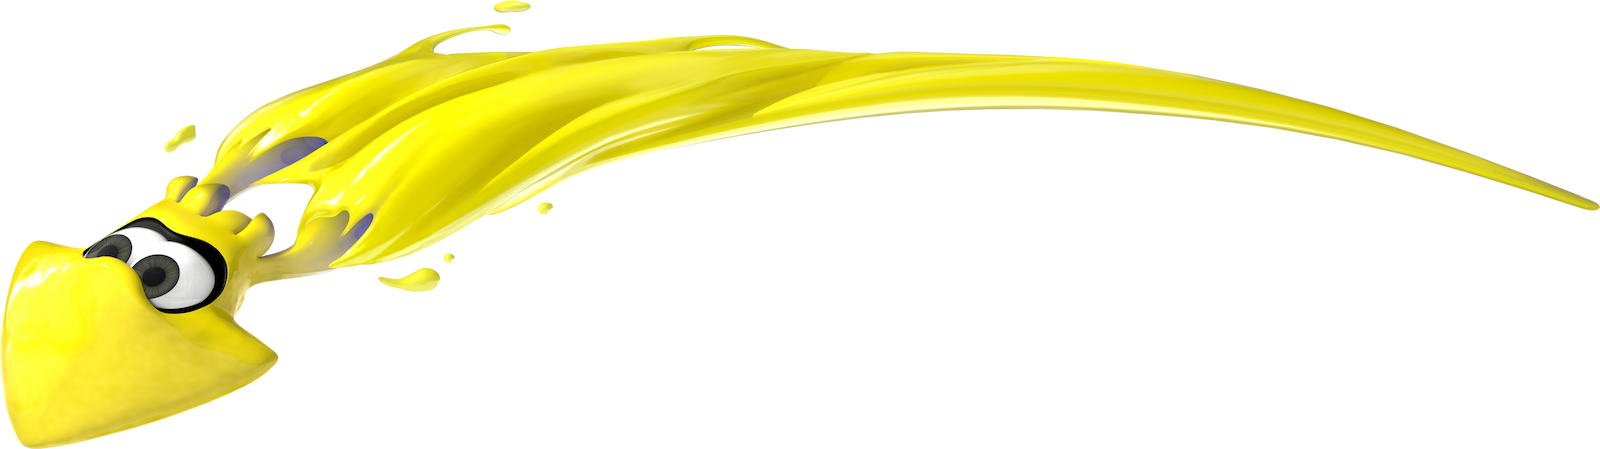 Um Inkling amarelo em forma de lula salta uma grande distância.